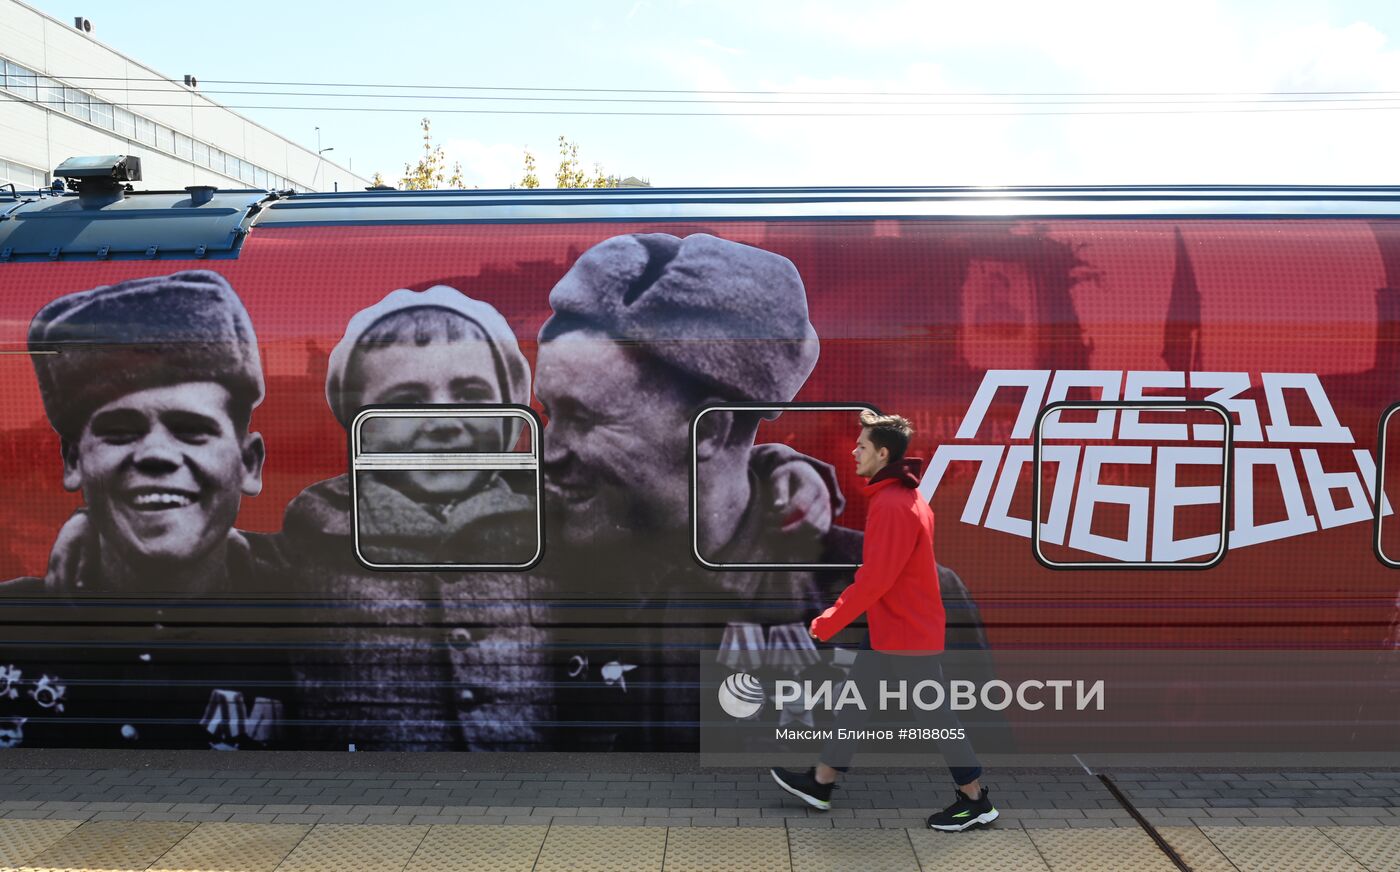 Презентация обновлённой экспозиции "Поезда Победы" на Киевском вокзале